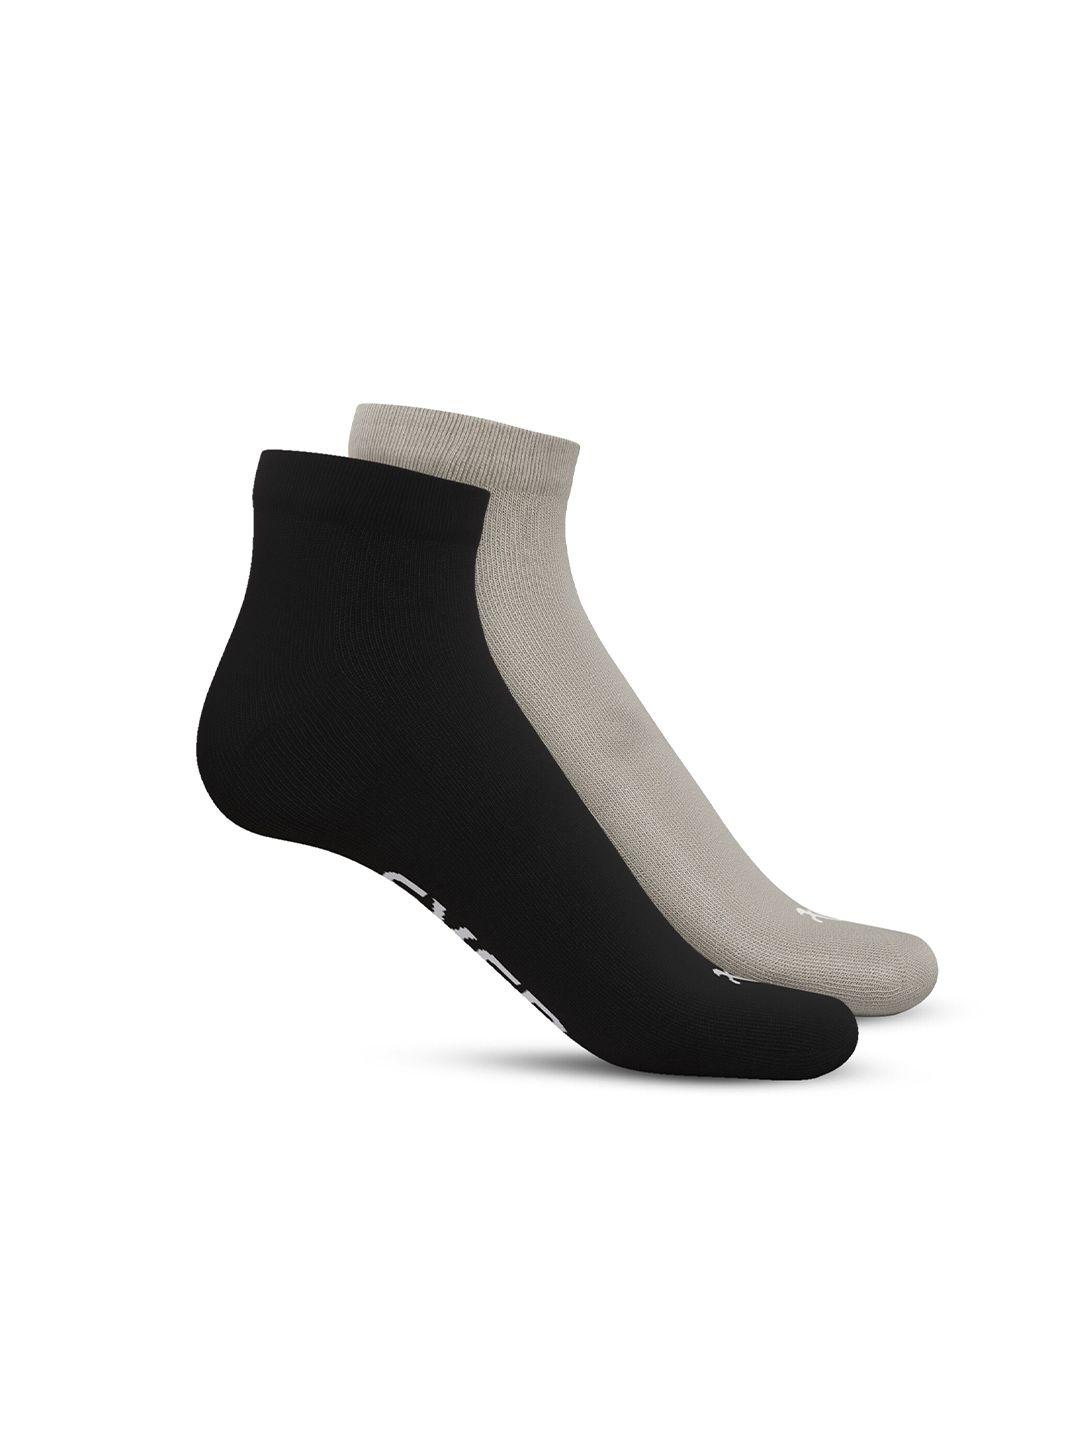 talkingsox unisex pack of 2 moisture wicking & odour-free ankle length socks